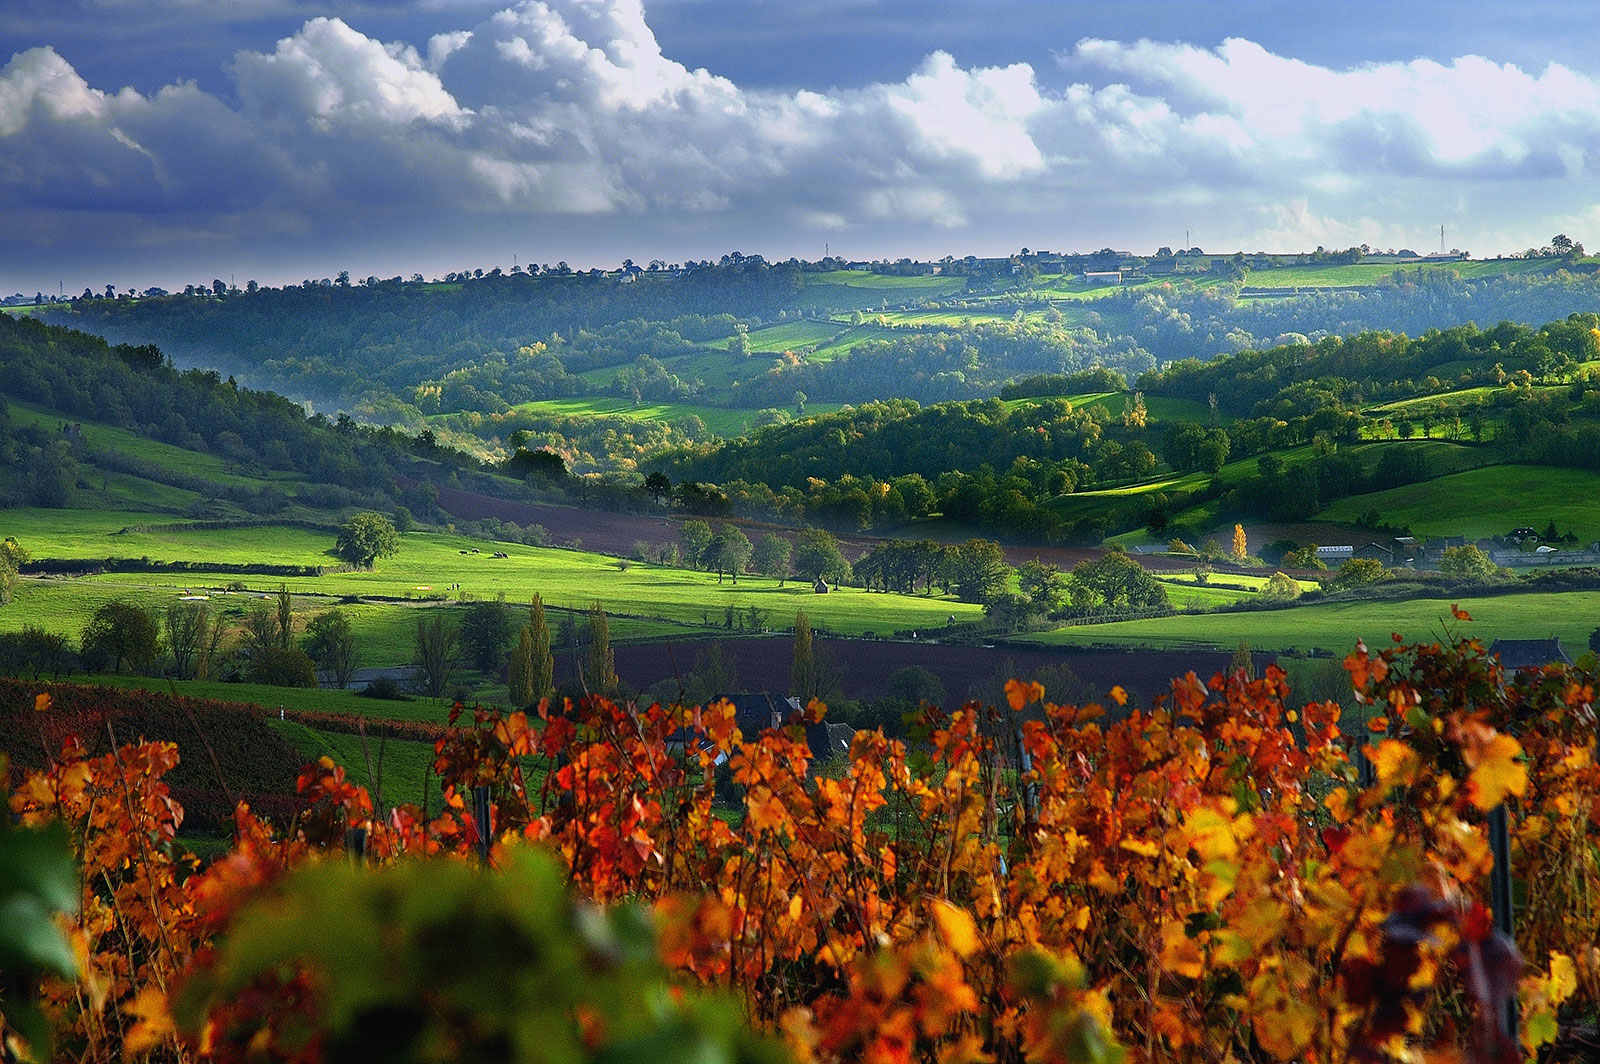 Les vignobles, visites et dégustation de vins  ...